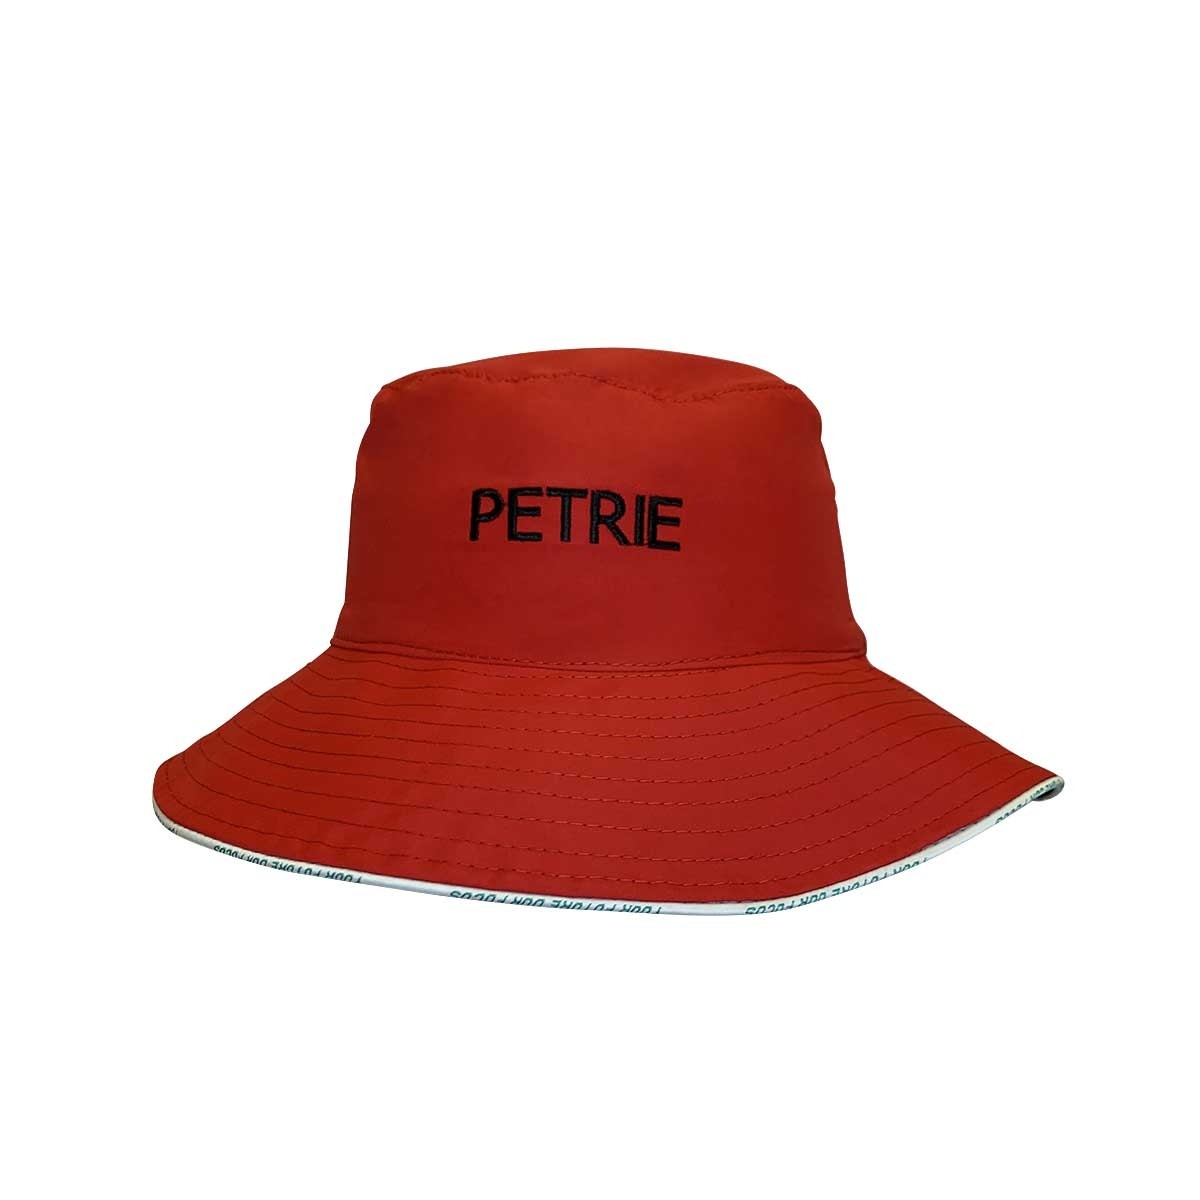 Hat Bucket Black/Red Petrie - School Locker